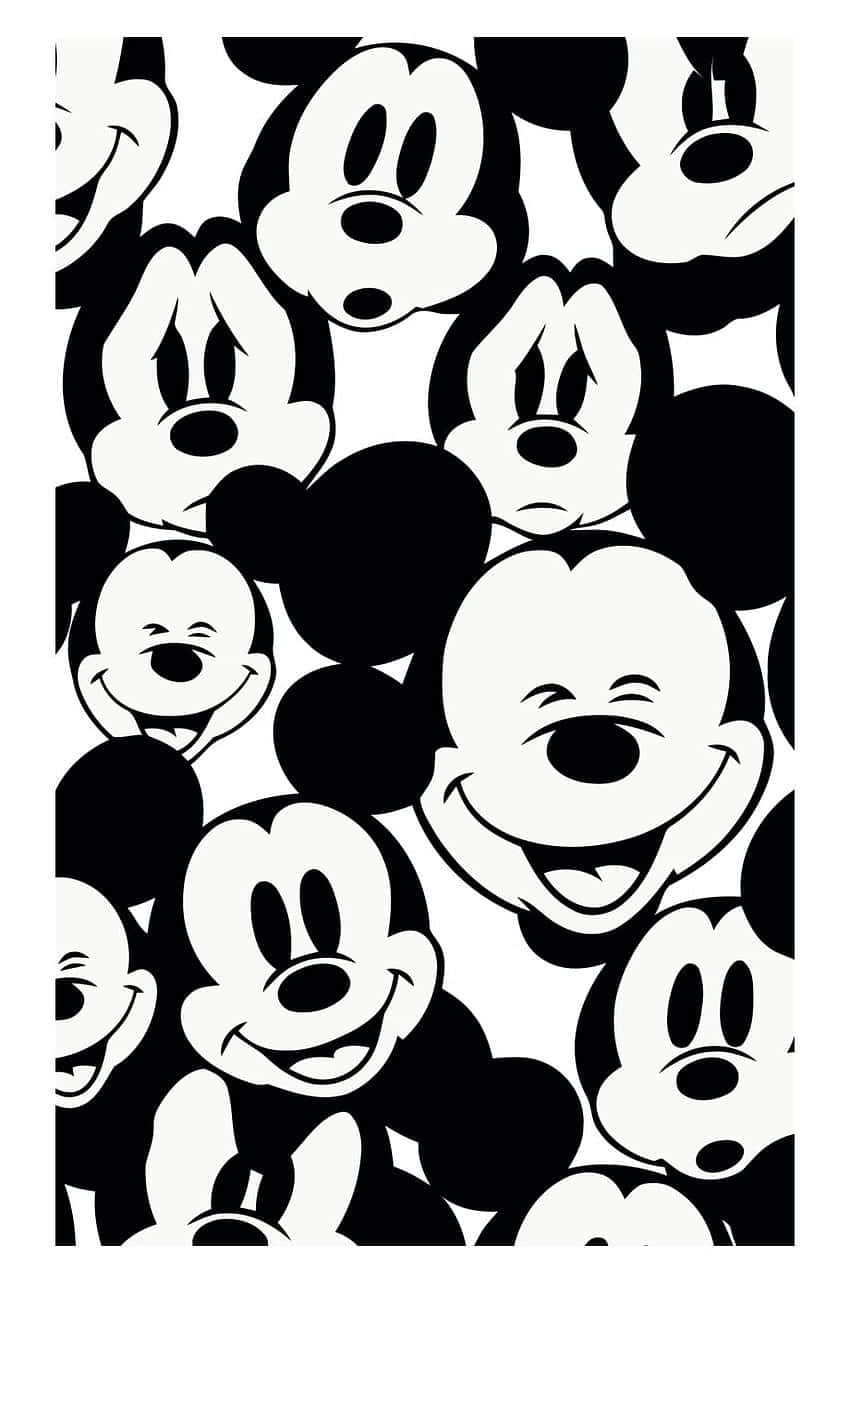 Bildein Schwarzes Elektrogerät Mit Dem Design Der Ikonischen Disney-figur, Mickey Mouse. Wallpaper